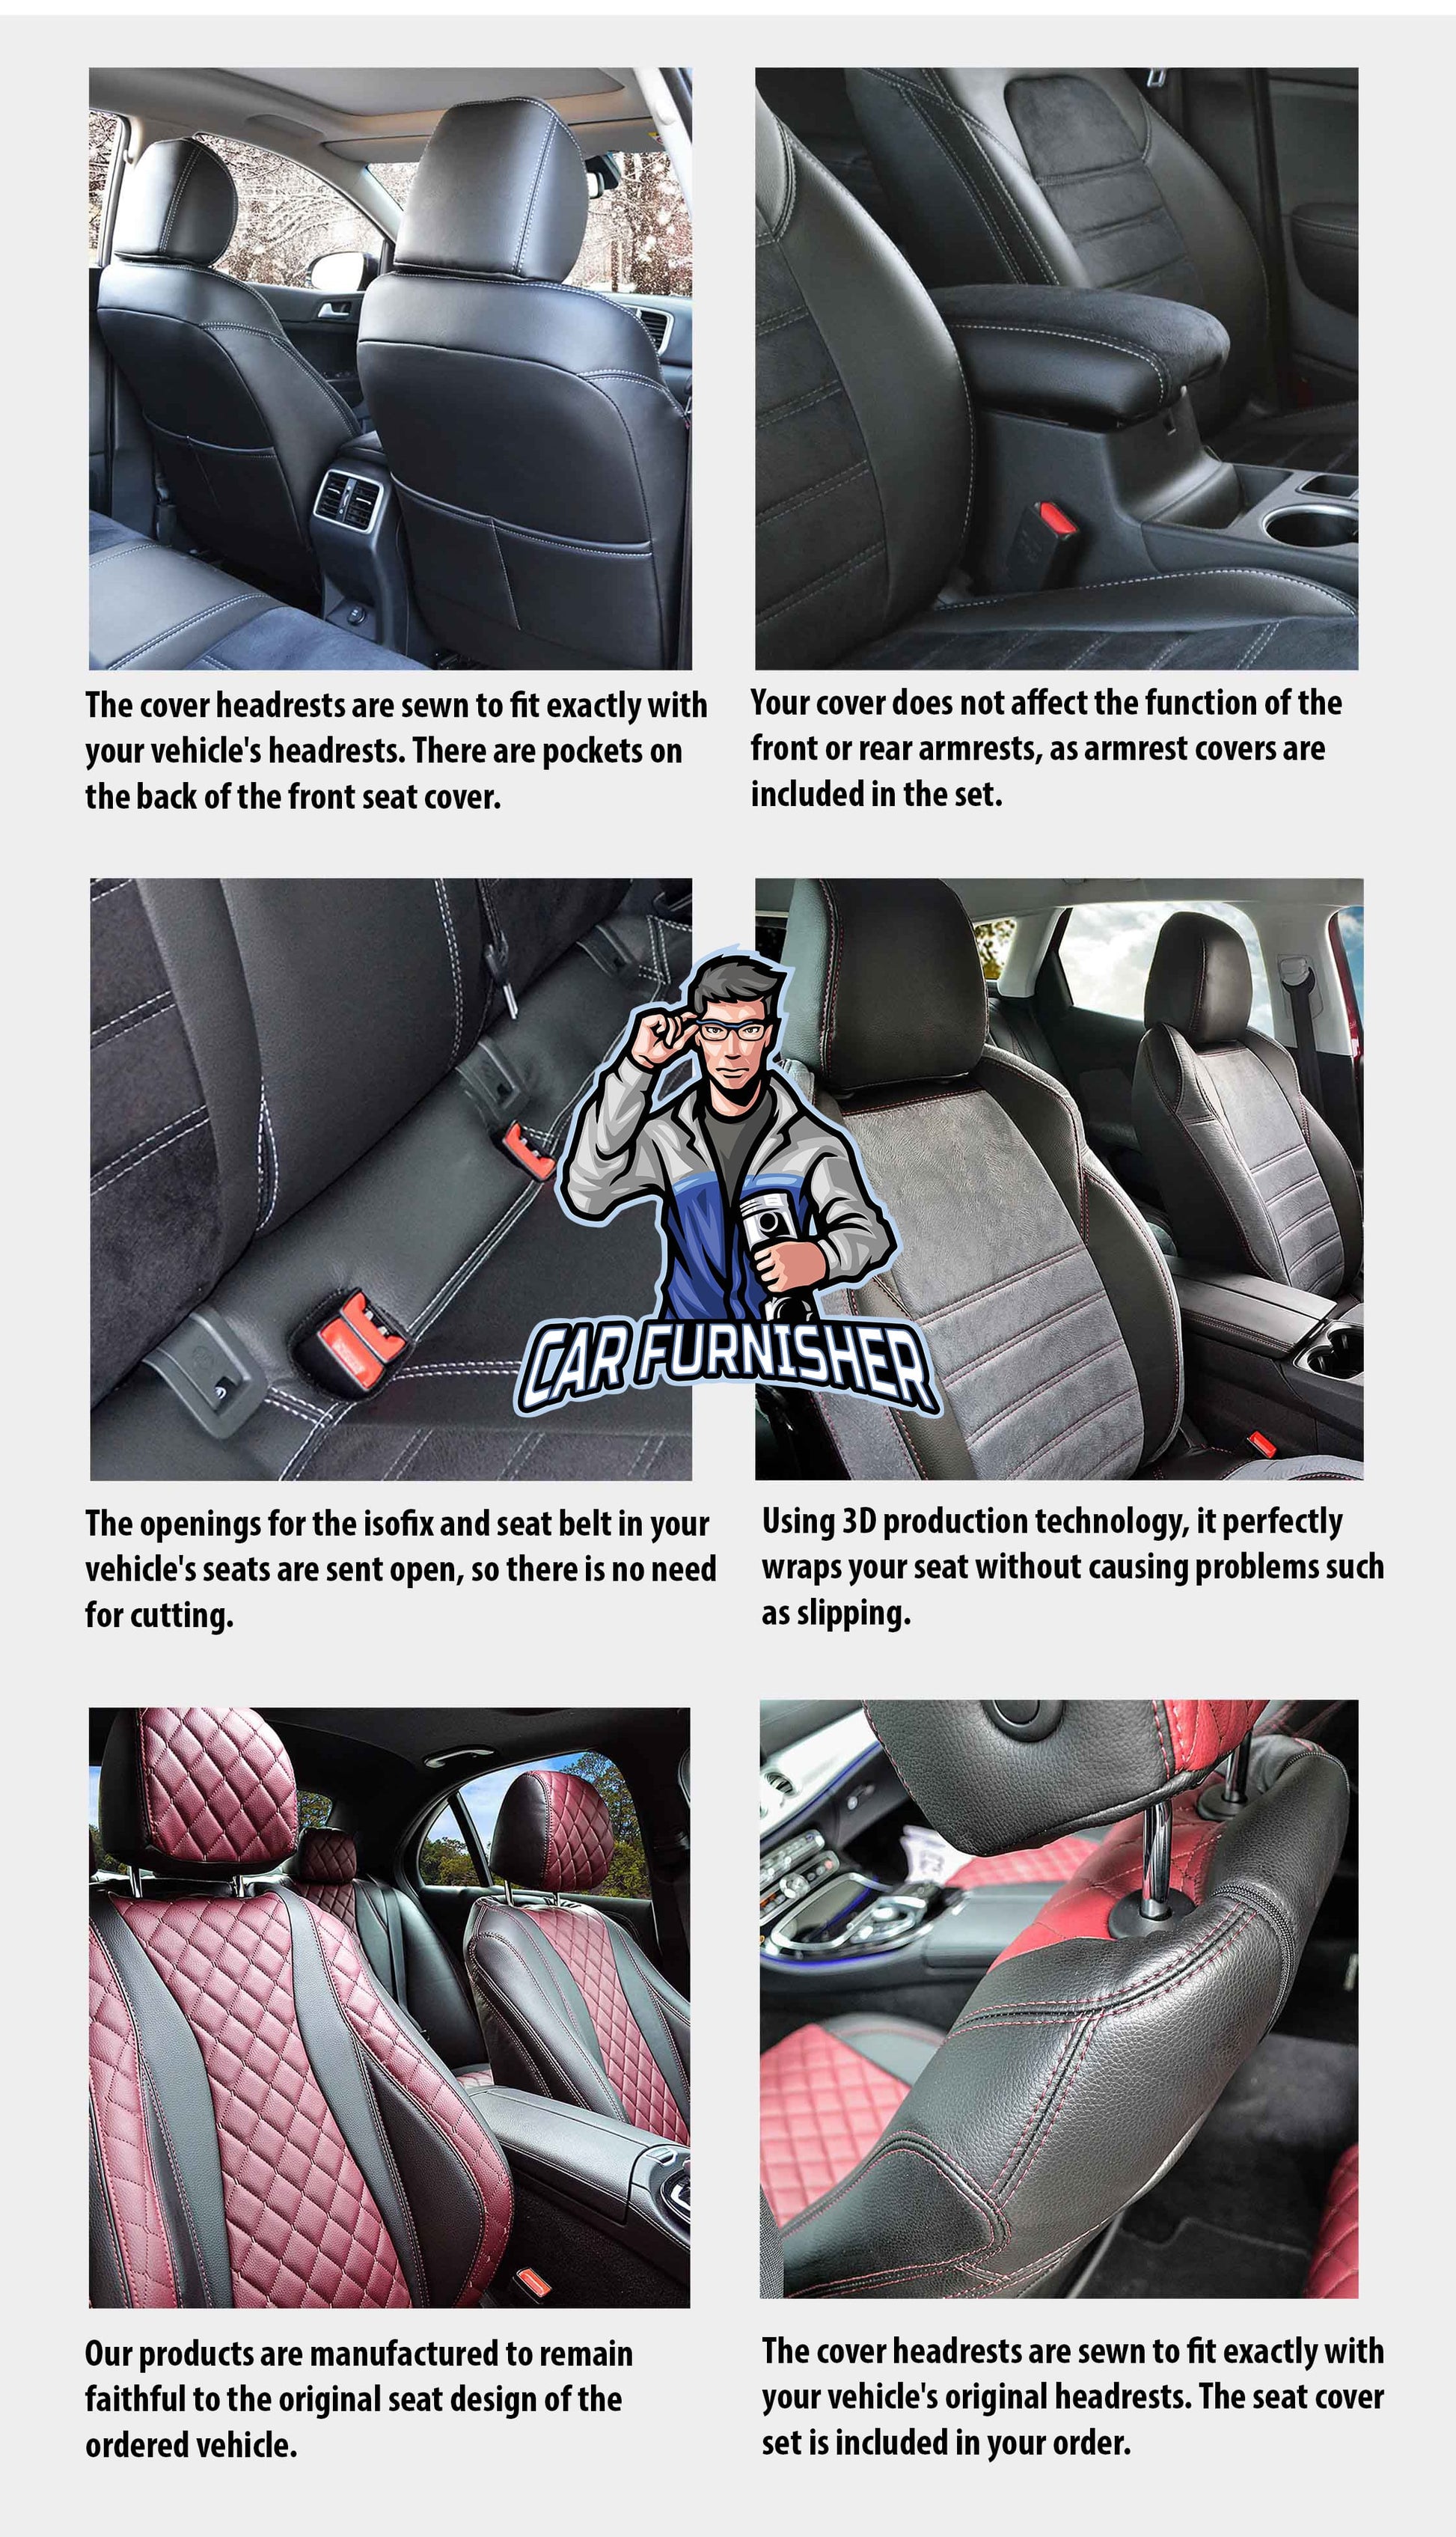 Volkswagen Caddy Seat Cover Camouflage Waterproof Design Sahara Camo Waterproof Fabric